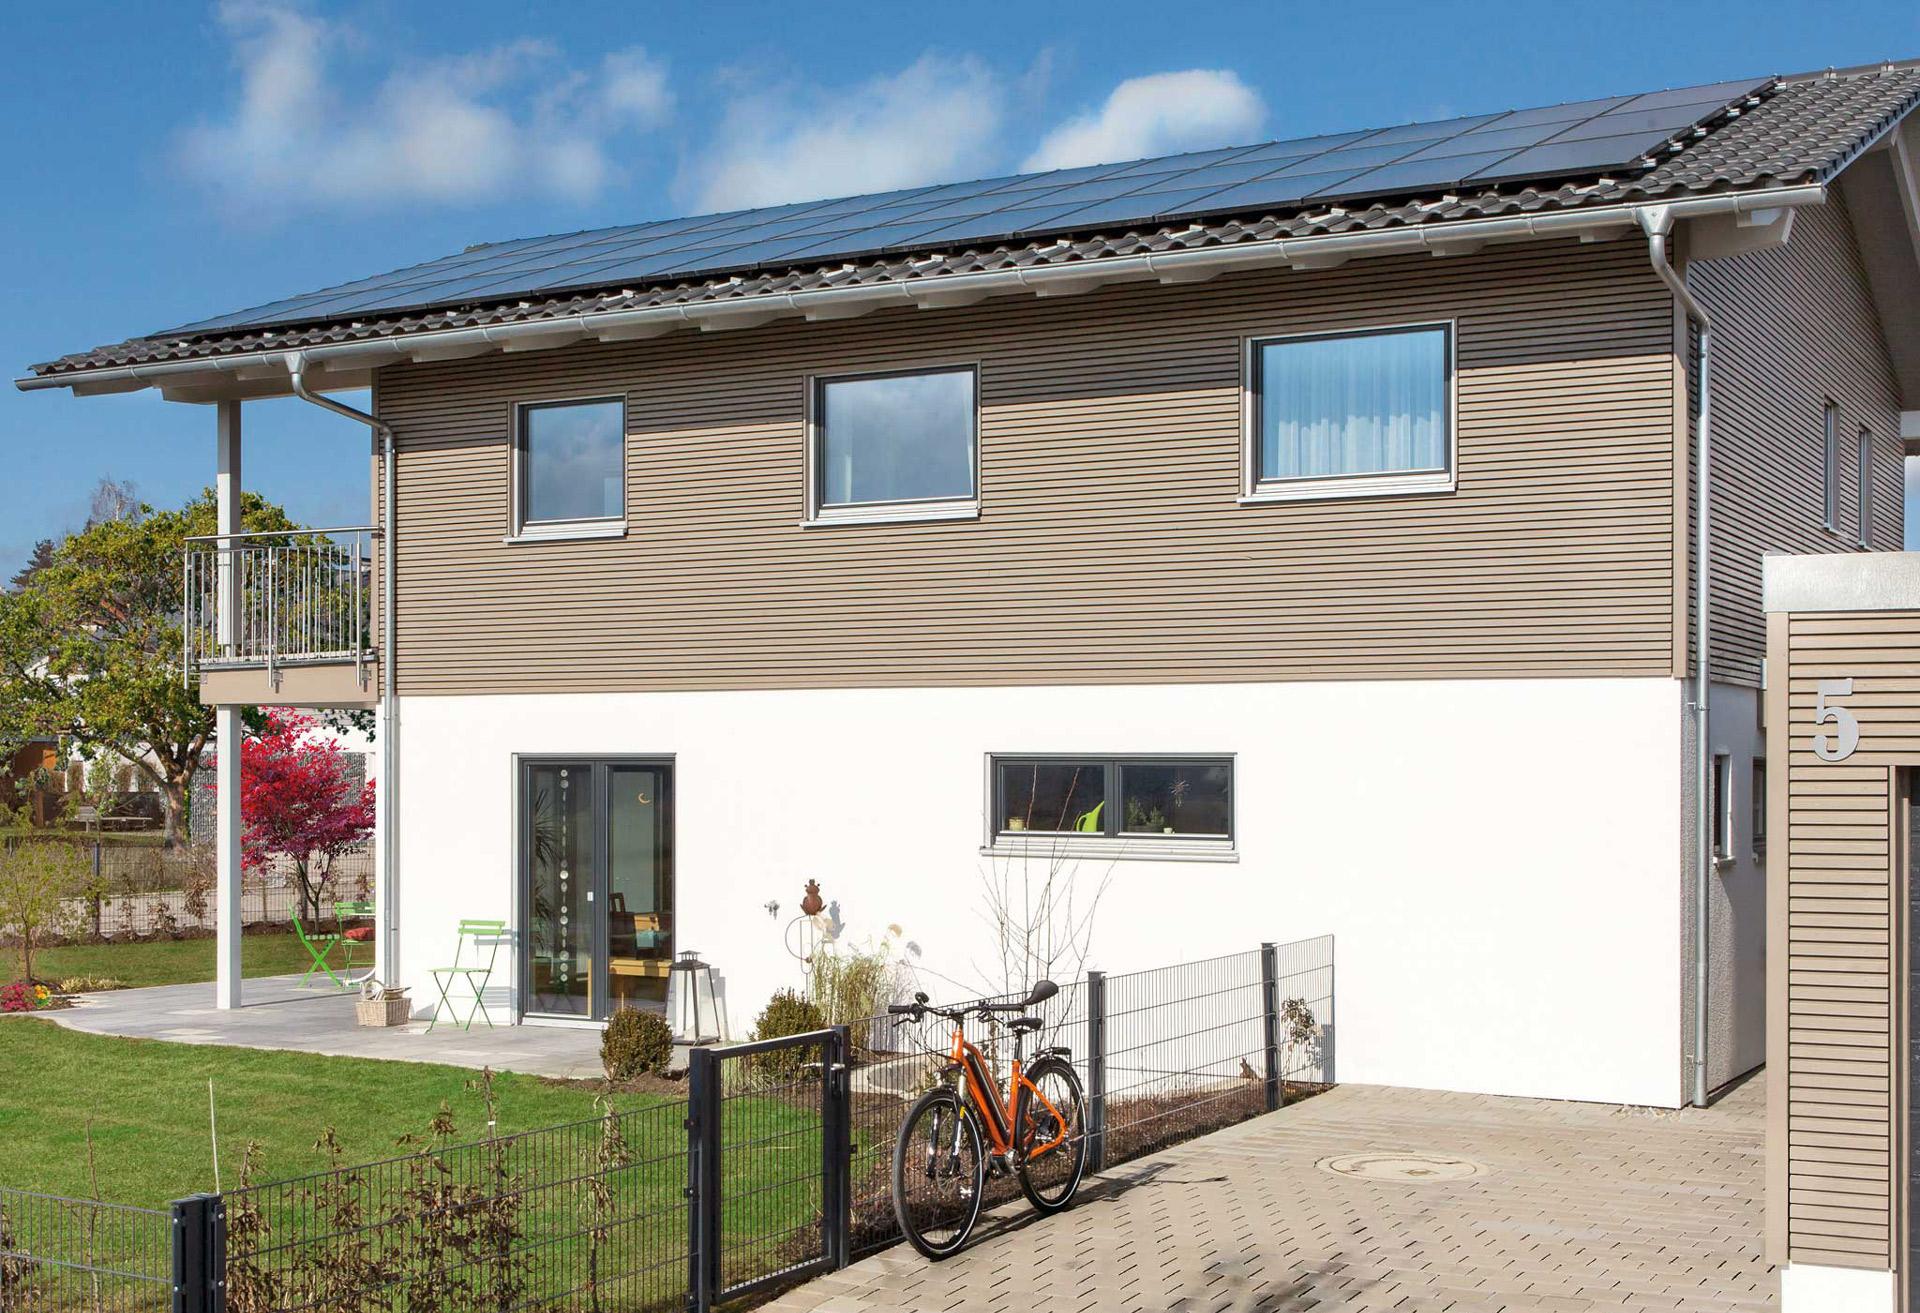 Casa efficienza energetica con impianto fotovoltaico e accumulatore di energia